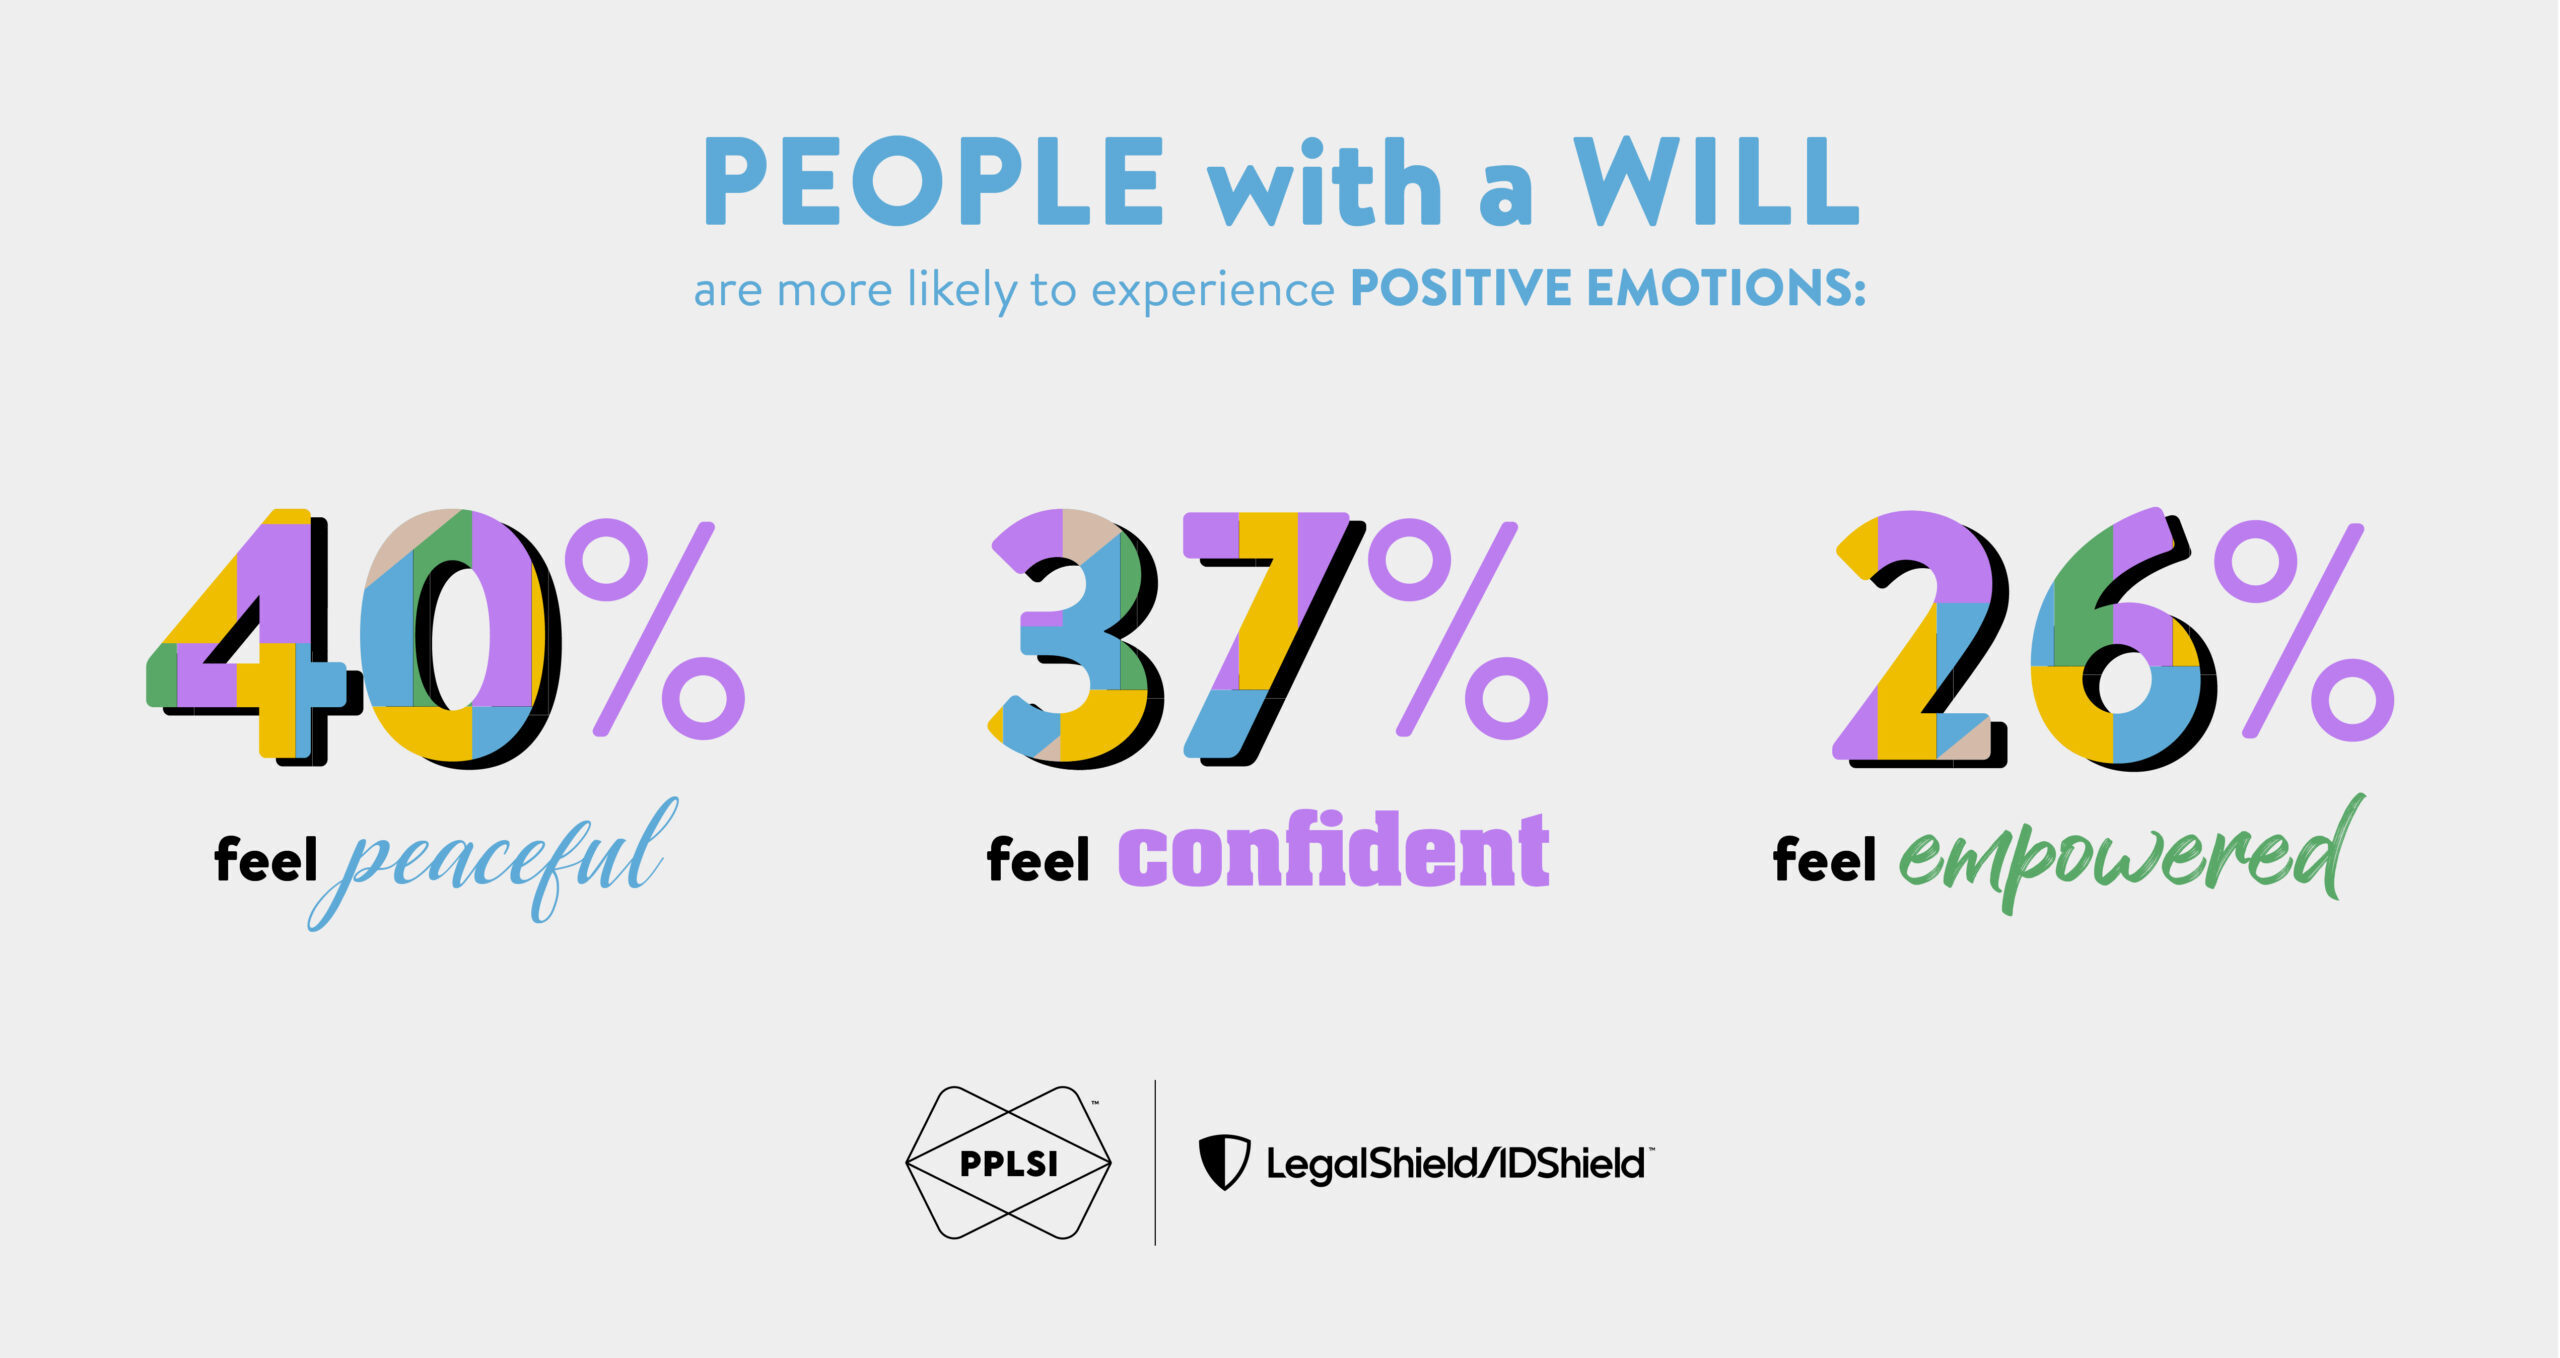 Las personas con voluntad son más propensas a experimentar emociones positivas: El 40% se siente en paz, el 37% en confianza y el 26% en poder.